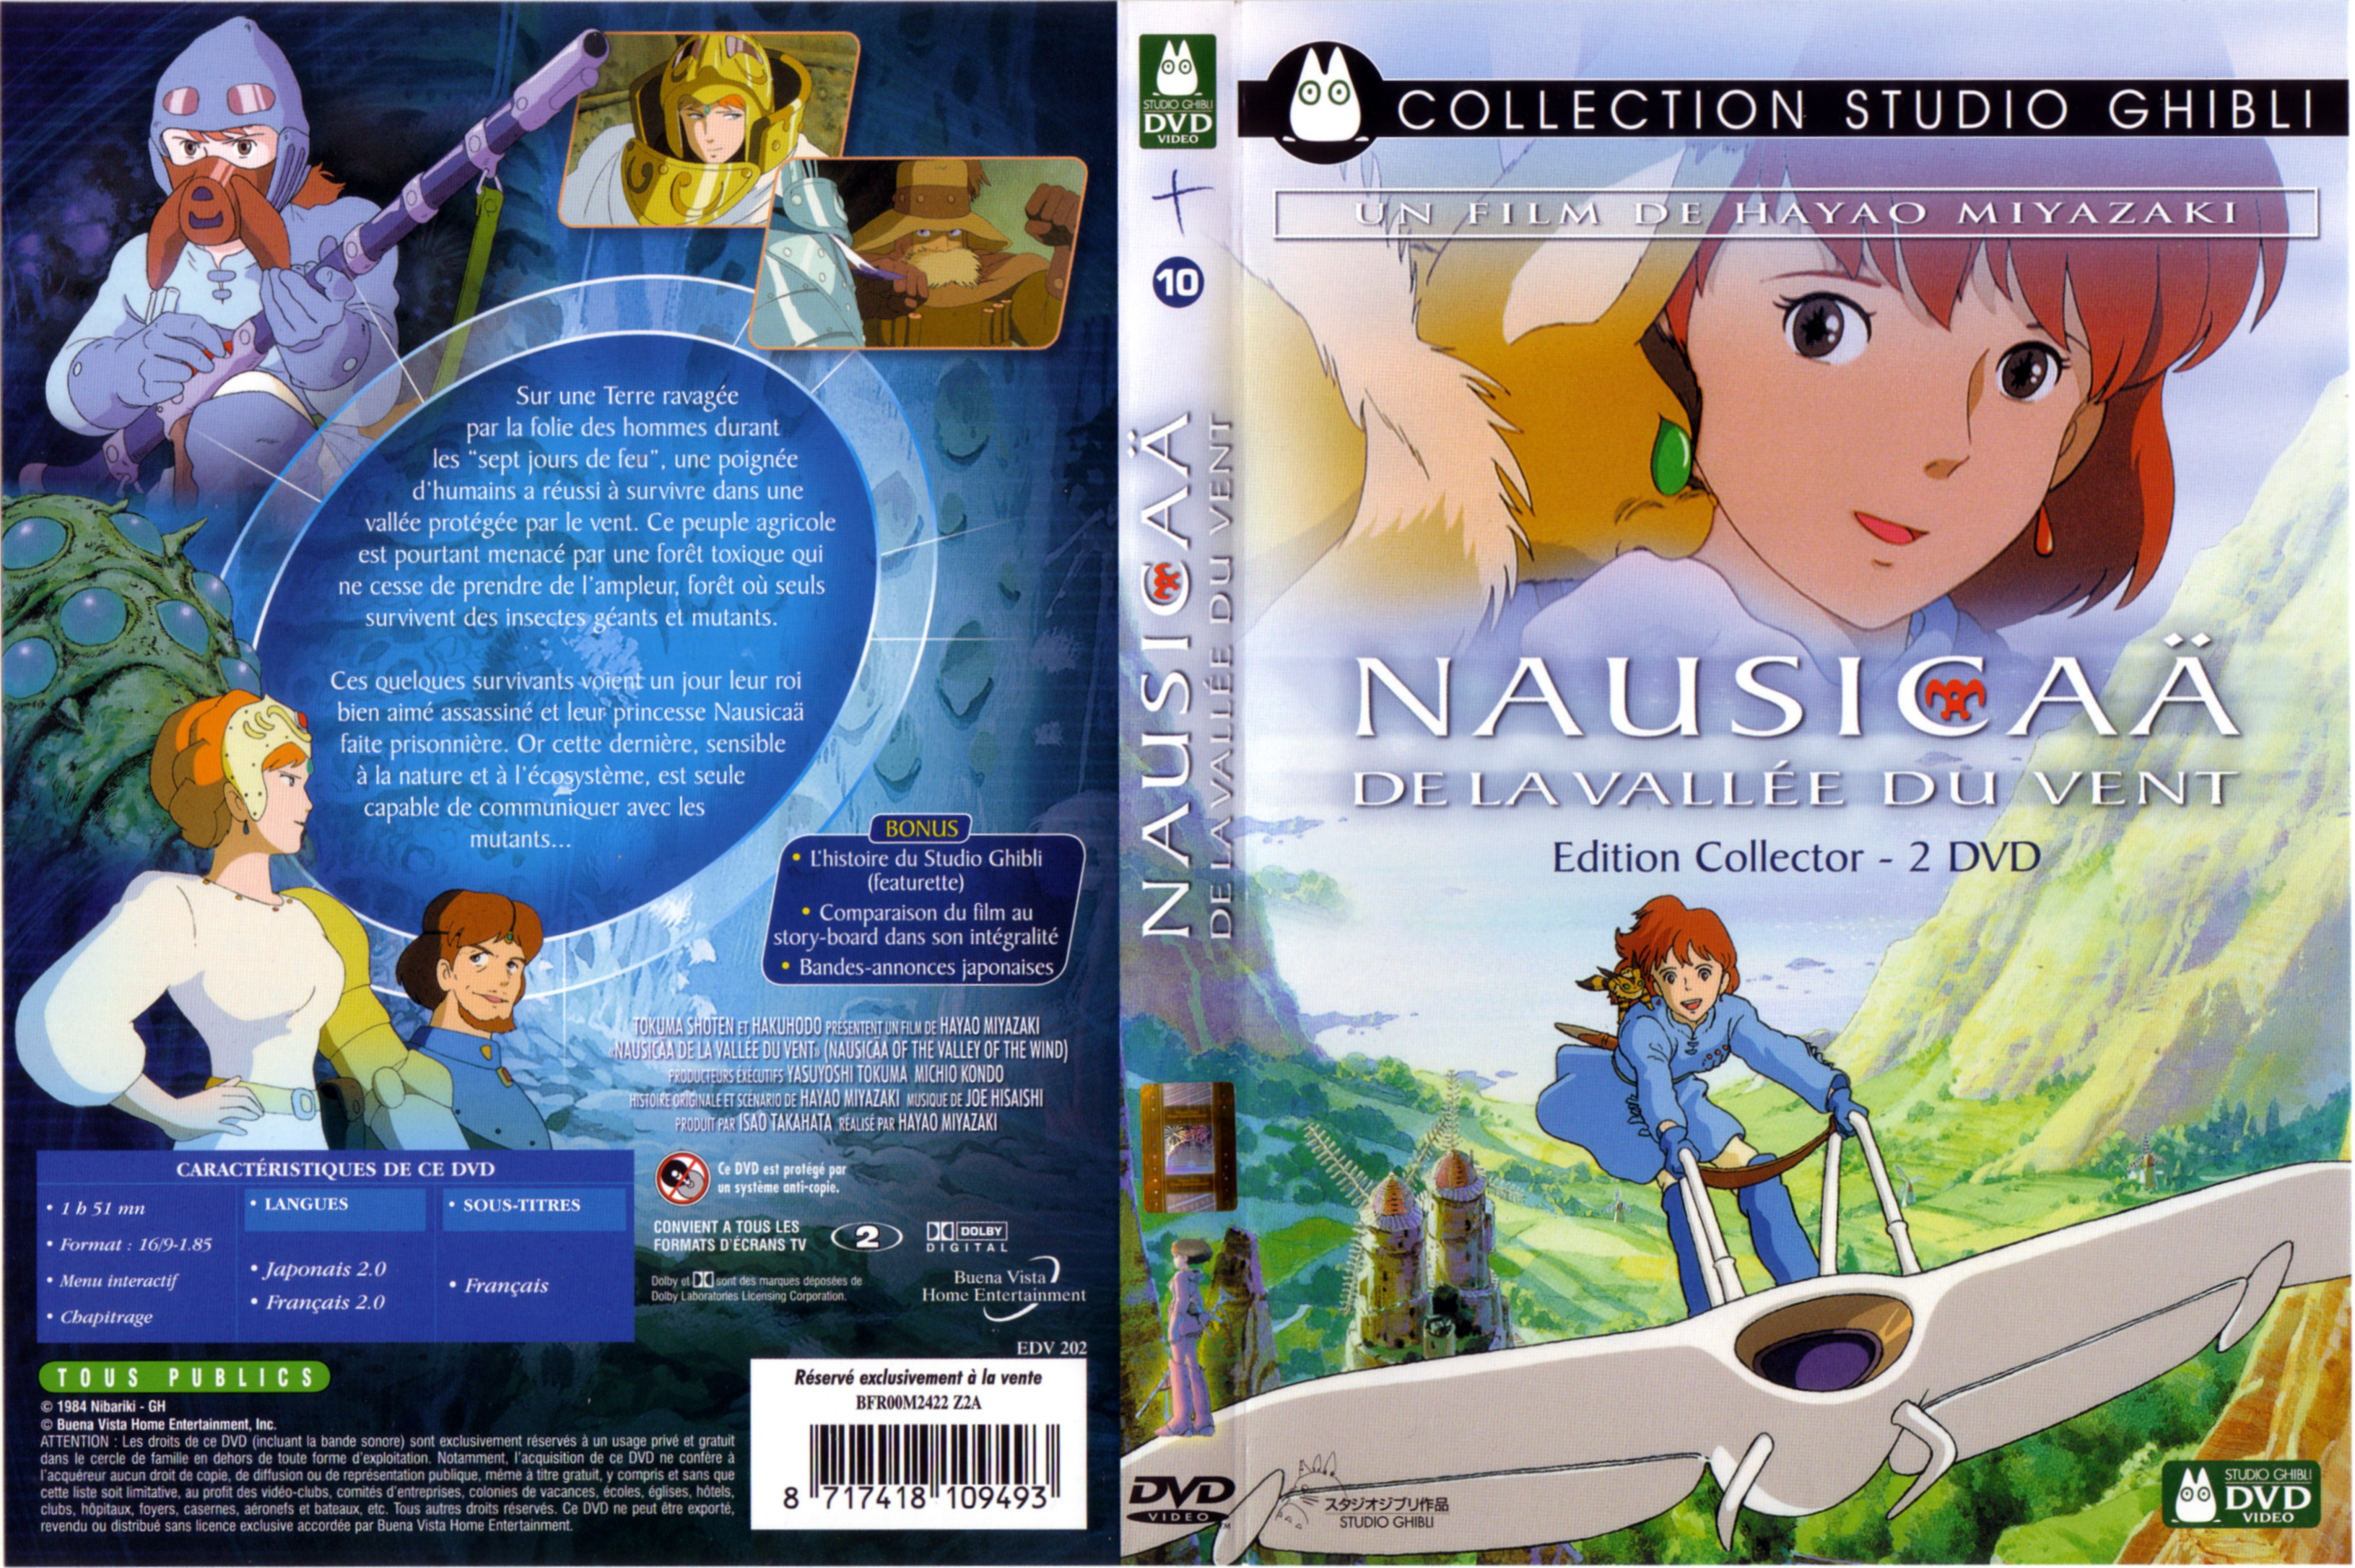 Jaquette DVD Nausicaa de la valle du vent v2